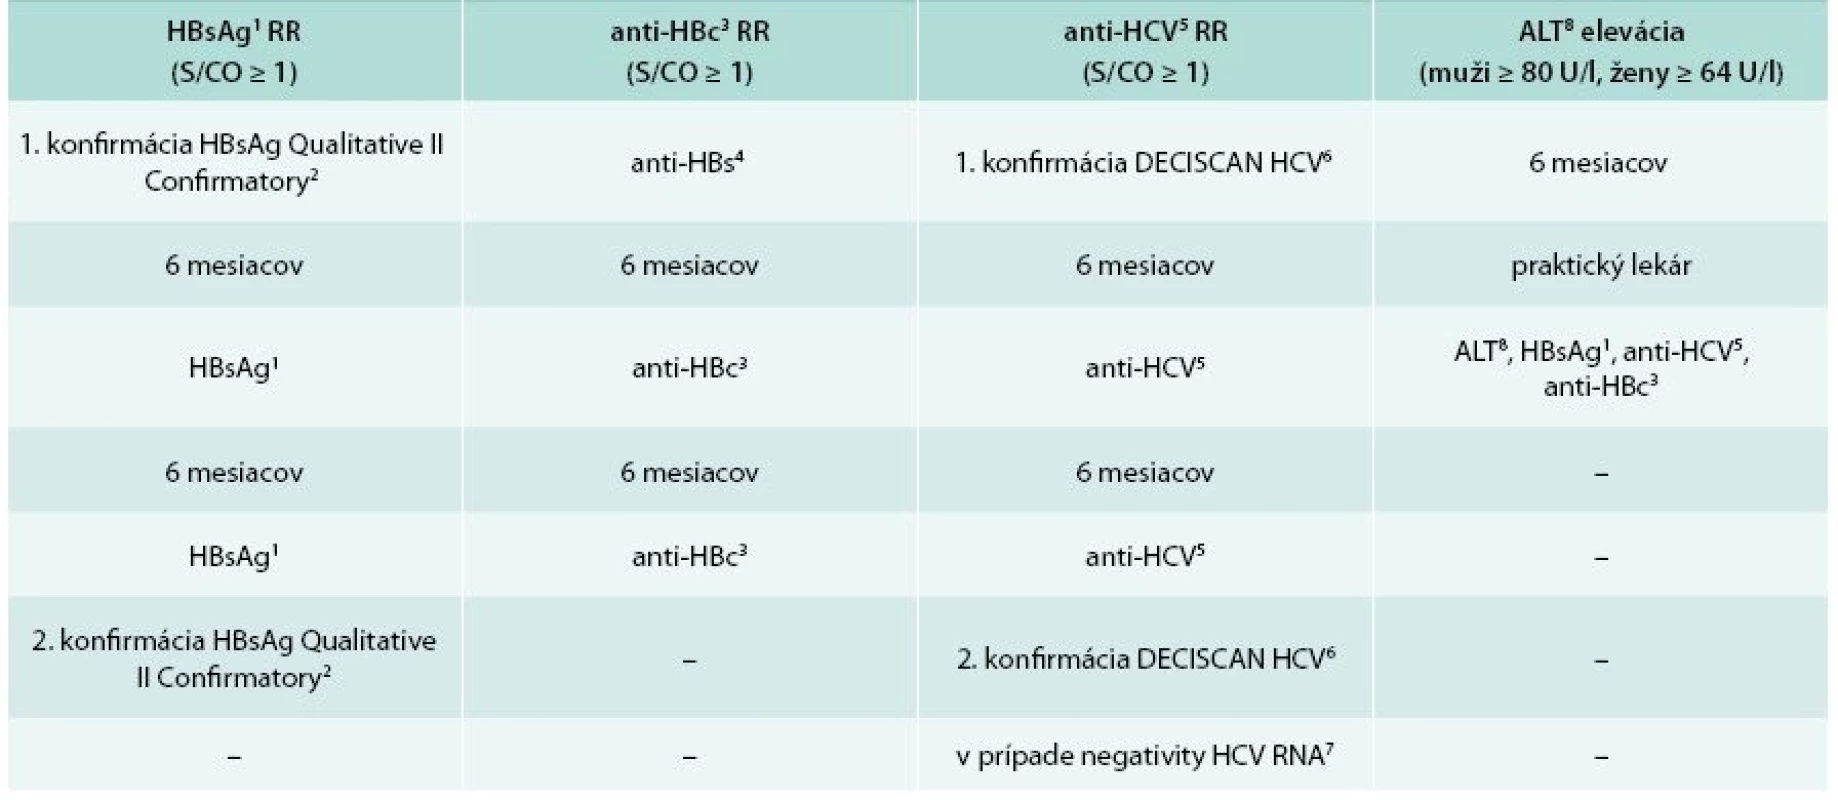 Schémy konfirmácie odberov s reaktivitou virologických parametrov hepatitíd B a C 
a eleváciou ALT